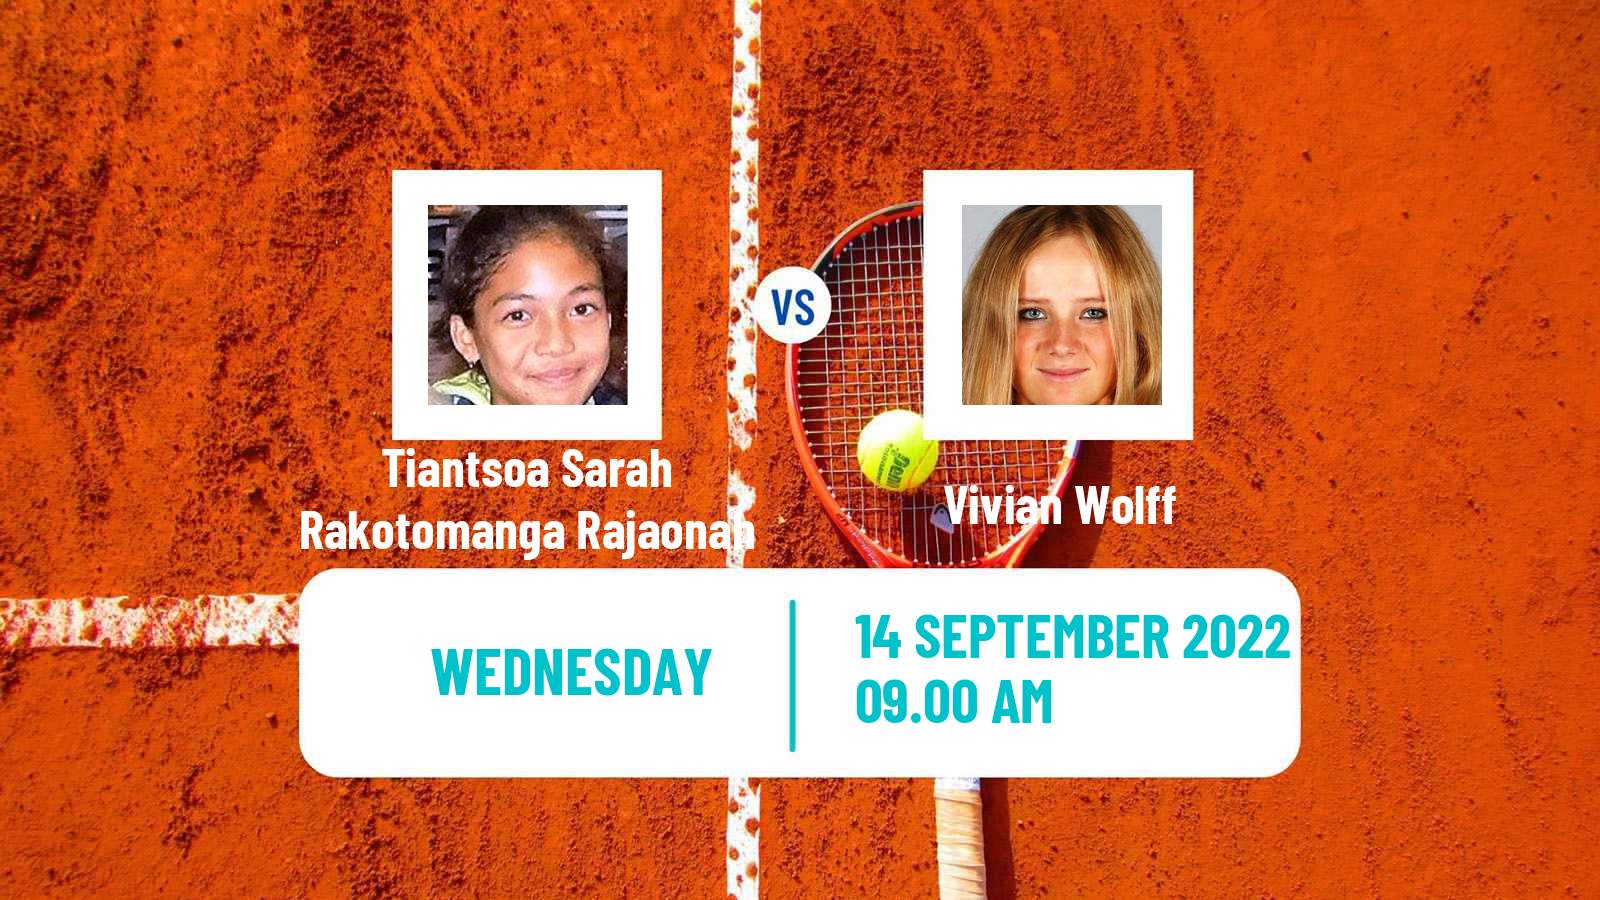 Tennis ITF Tournaments Tiantsoa Sarah Rakotomanga Rajaonah - Vivian Wolff